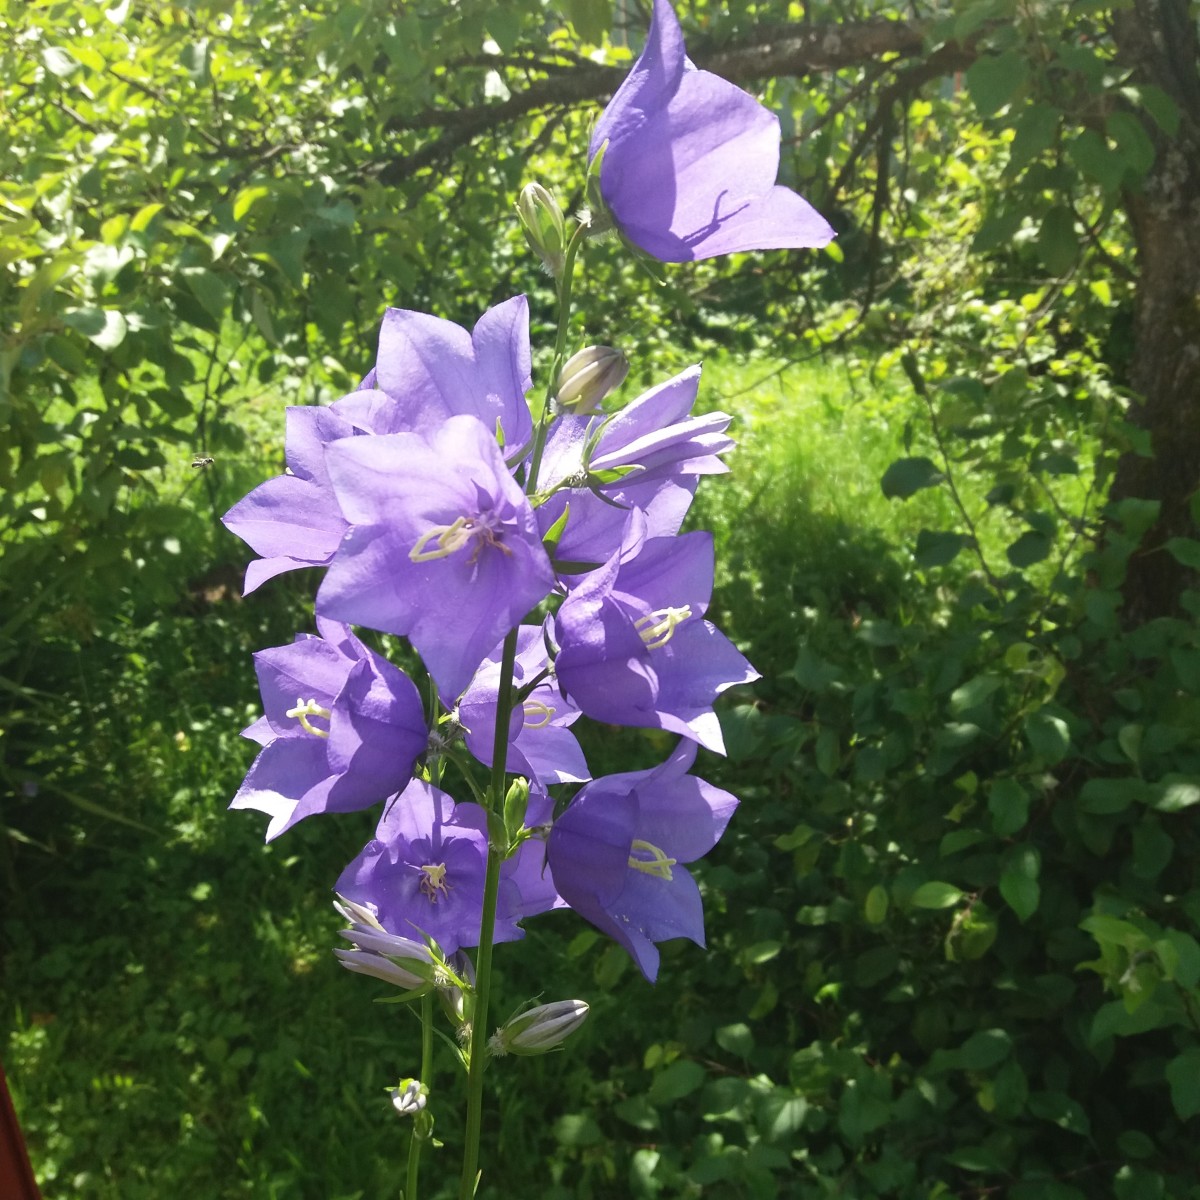 Колокольчик цветок многолетний садовый виды фото и названия